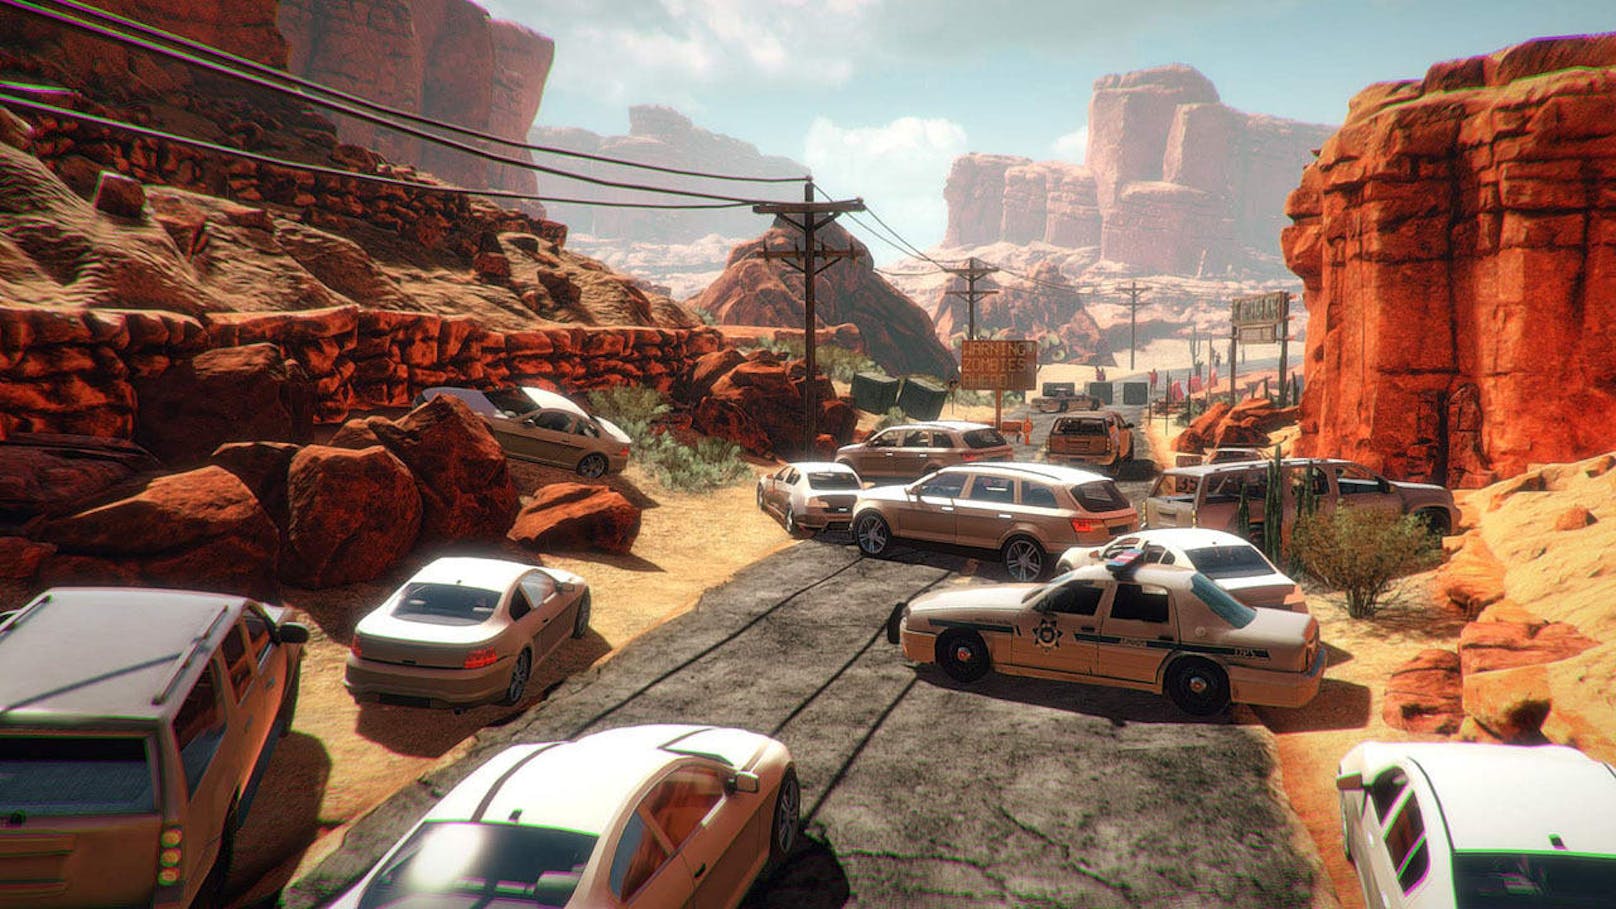 Arizona Sunshine zählt auch deswegen zu den besten VR-Spielevertretern, weil es eine solide und bemerkenswerte Kampagne abliefert. Die Flucht und der Kampf gegen die Zombies wirken durchdacht und werden Spieler rund fünf Stunden beschäftigen.